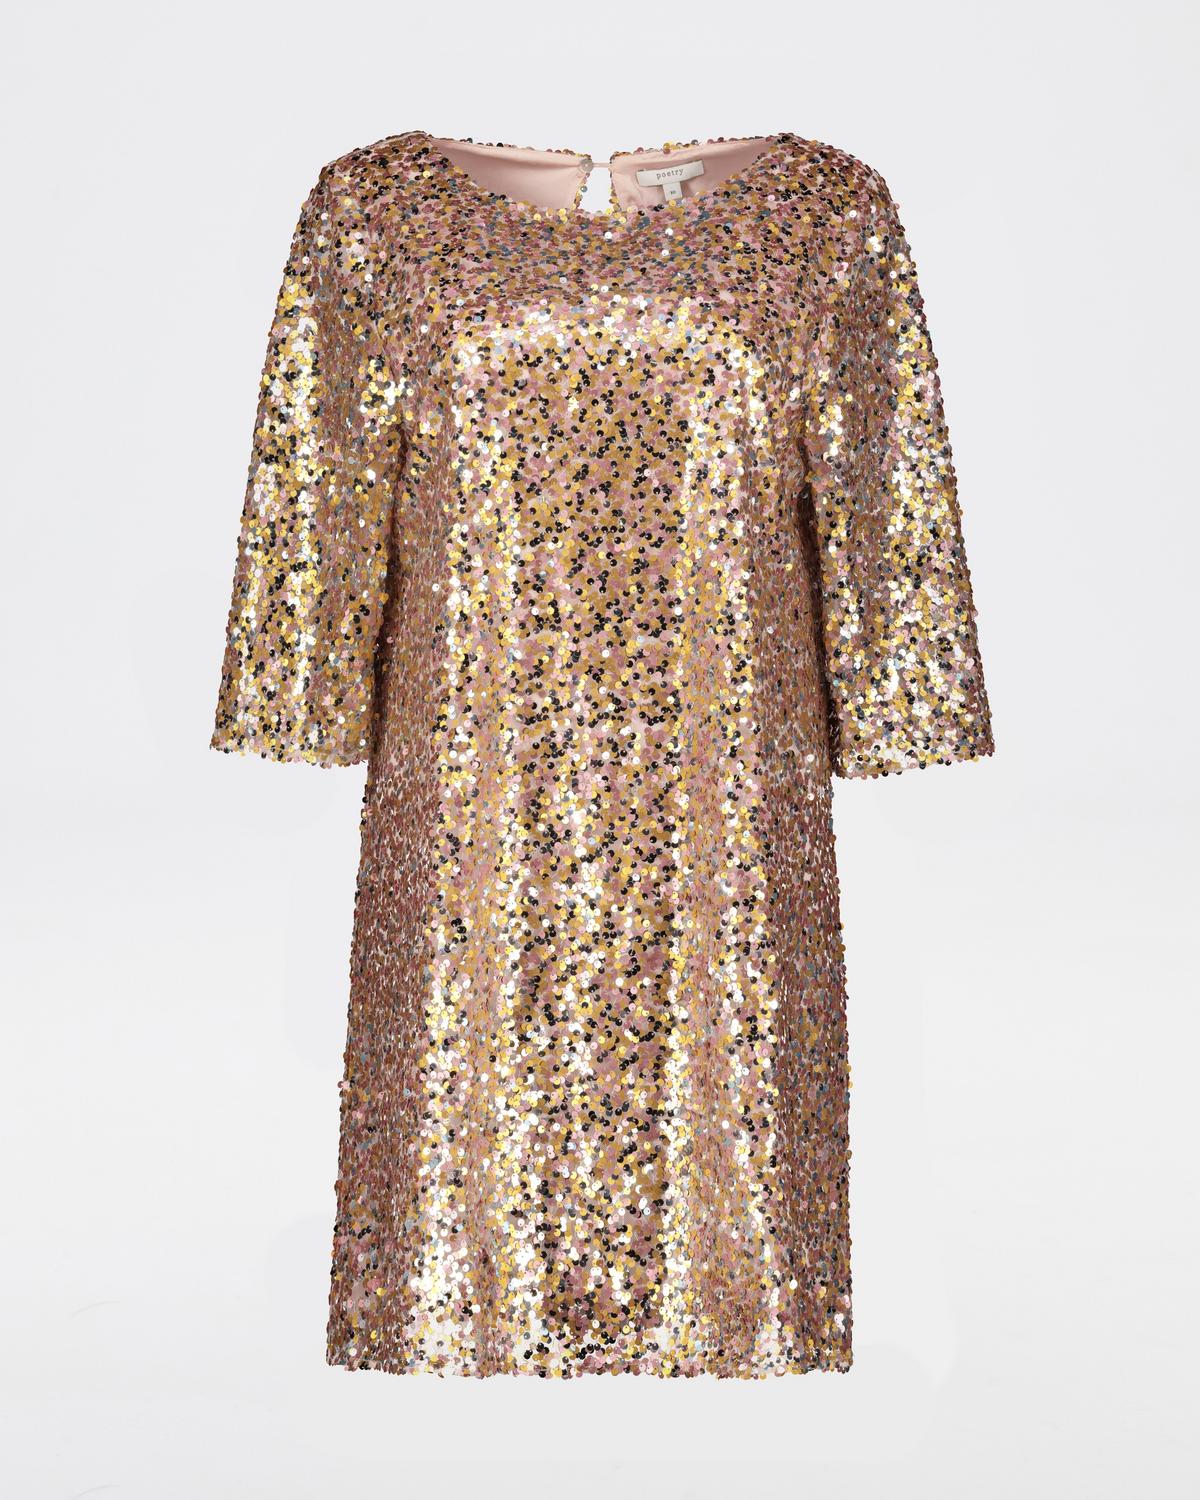 Marron Sequin Dress -  Assorted